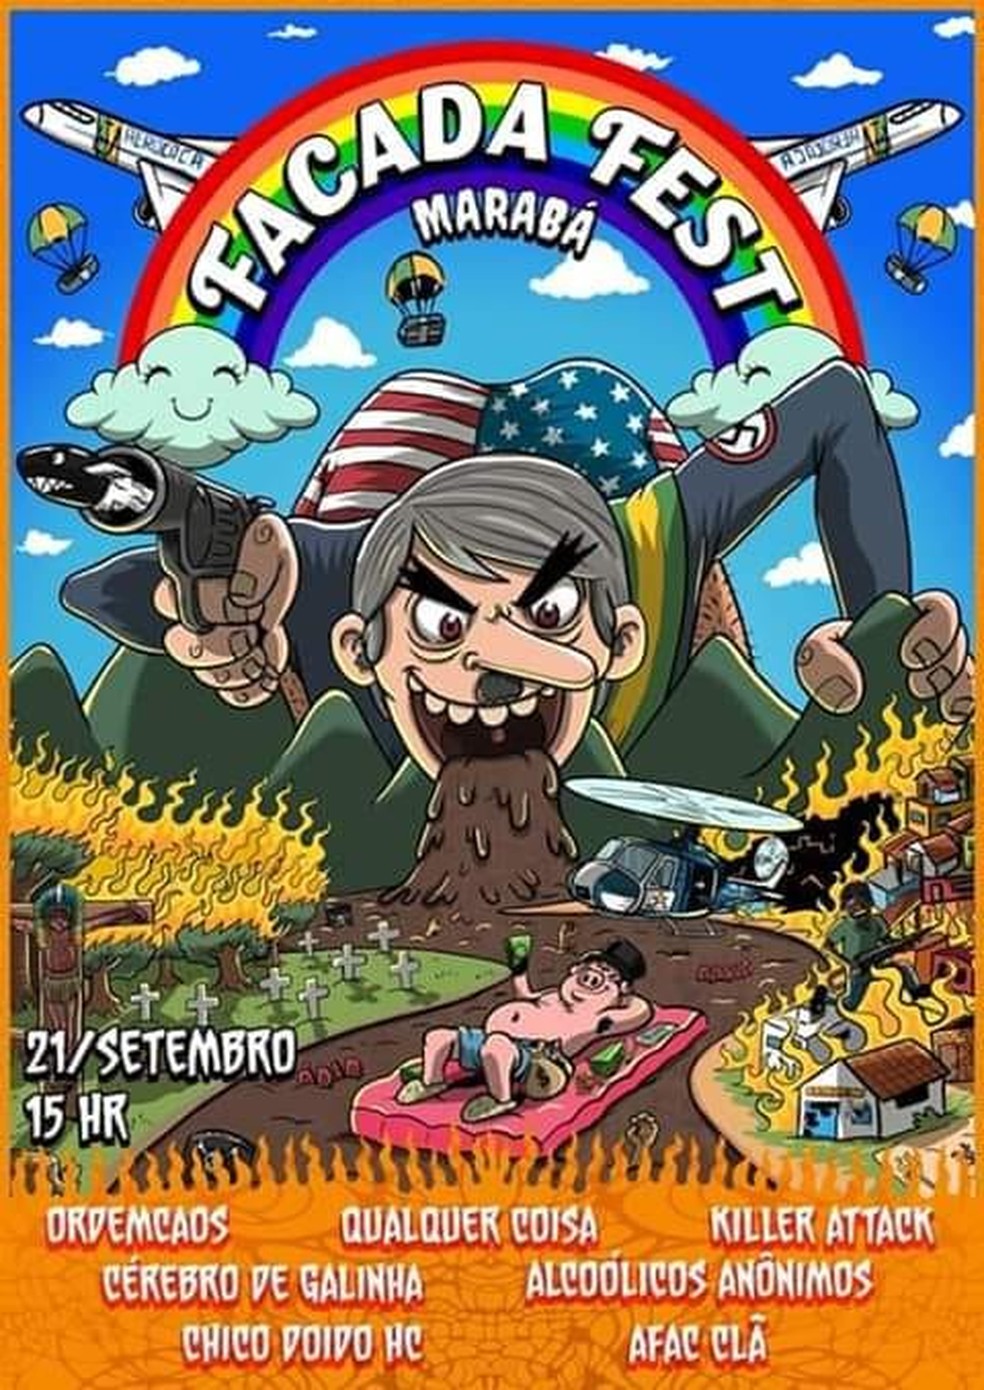 No cartaz do festival em Marabá, o personagem central aparece vomitando fezes sobre uma floresta, com bigode semelhante ao do ditador Hitler — Foto: Divulgação